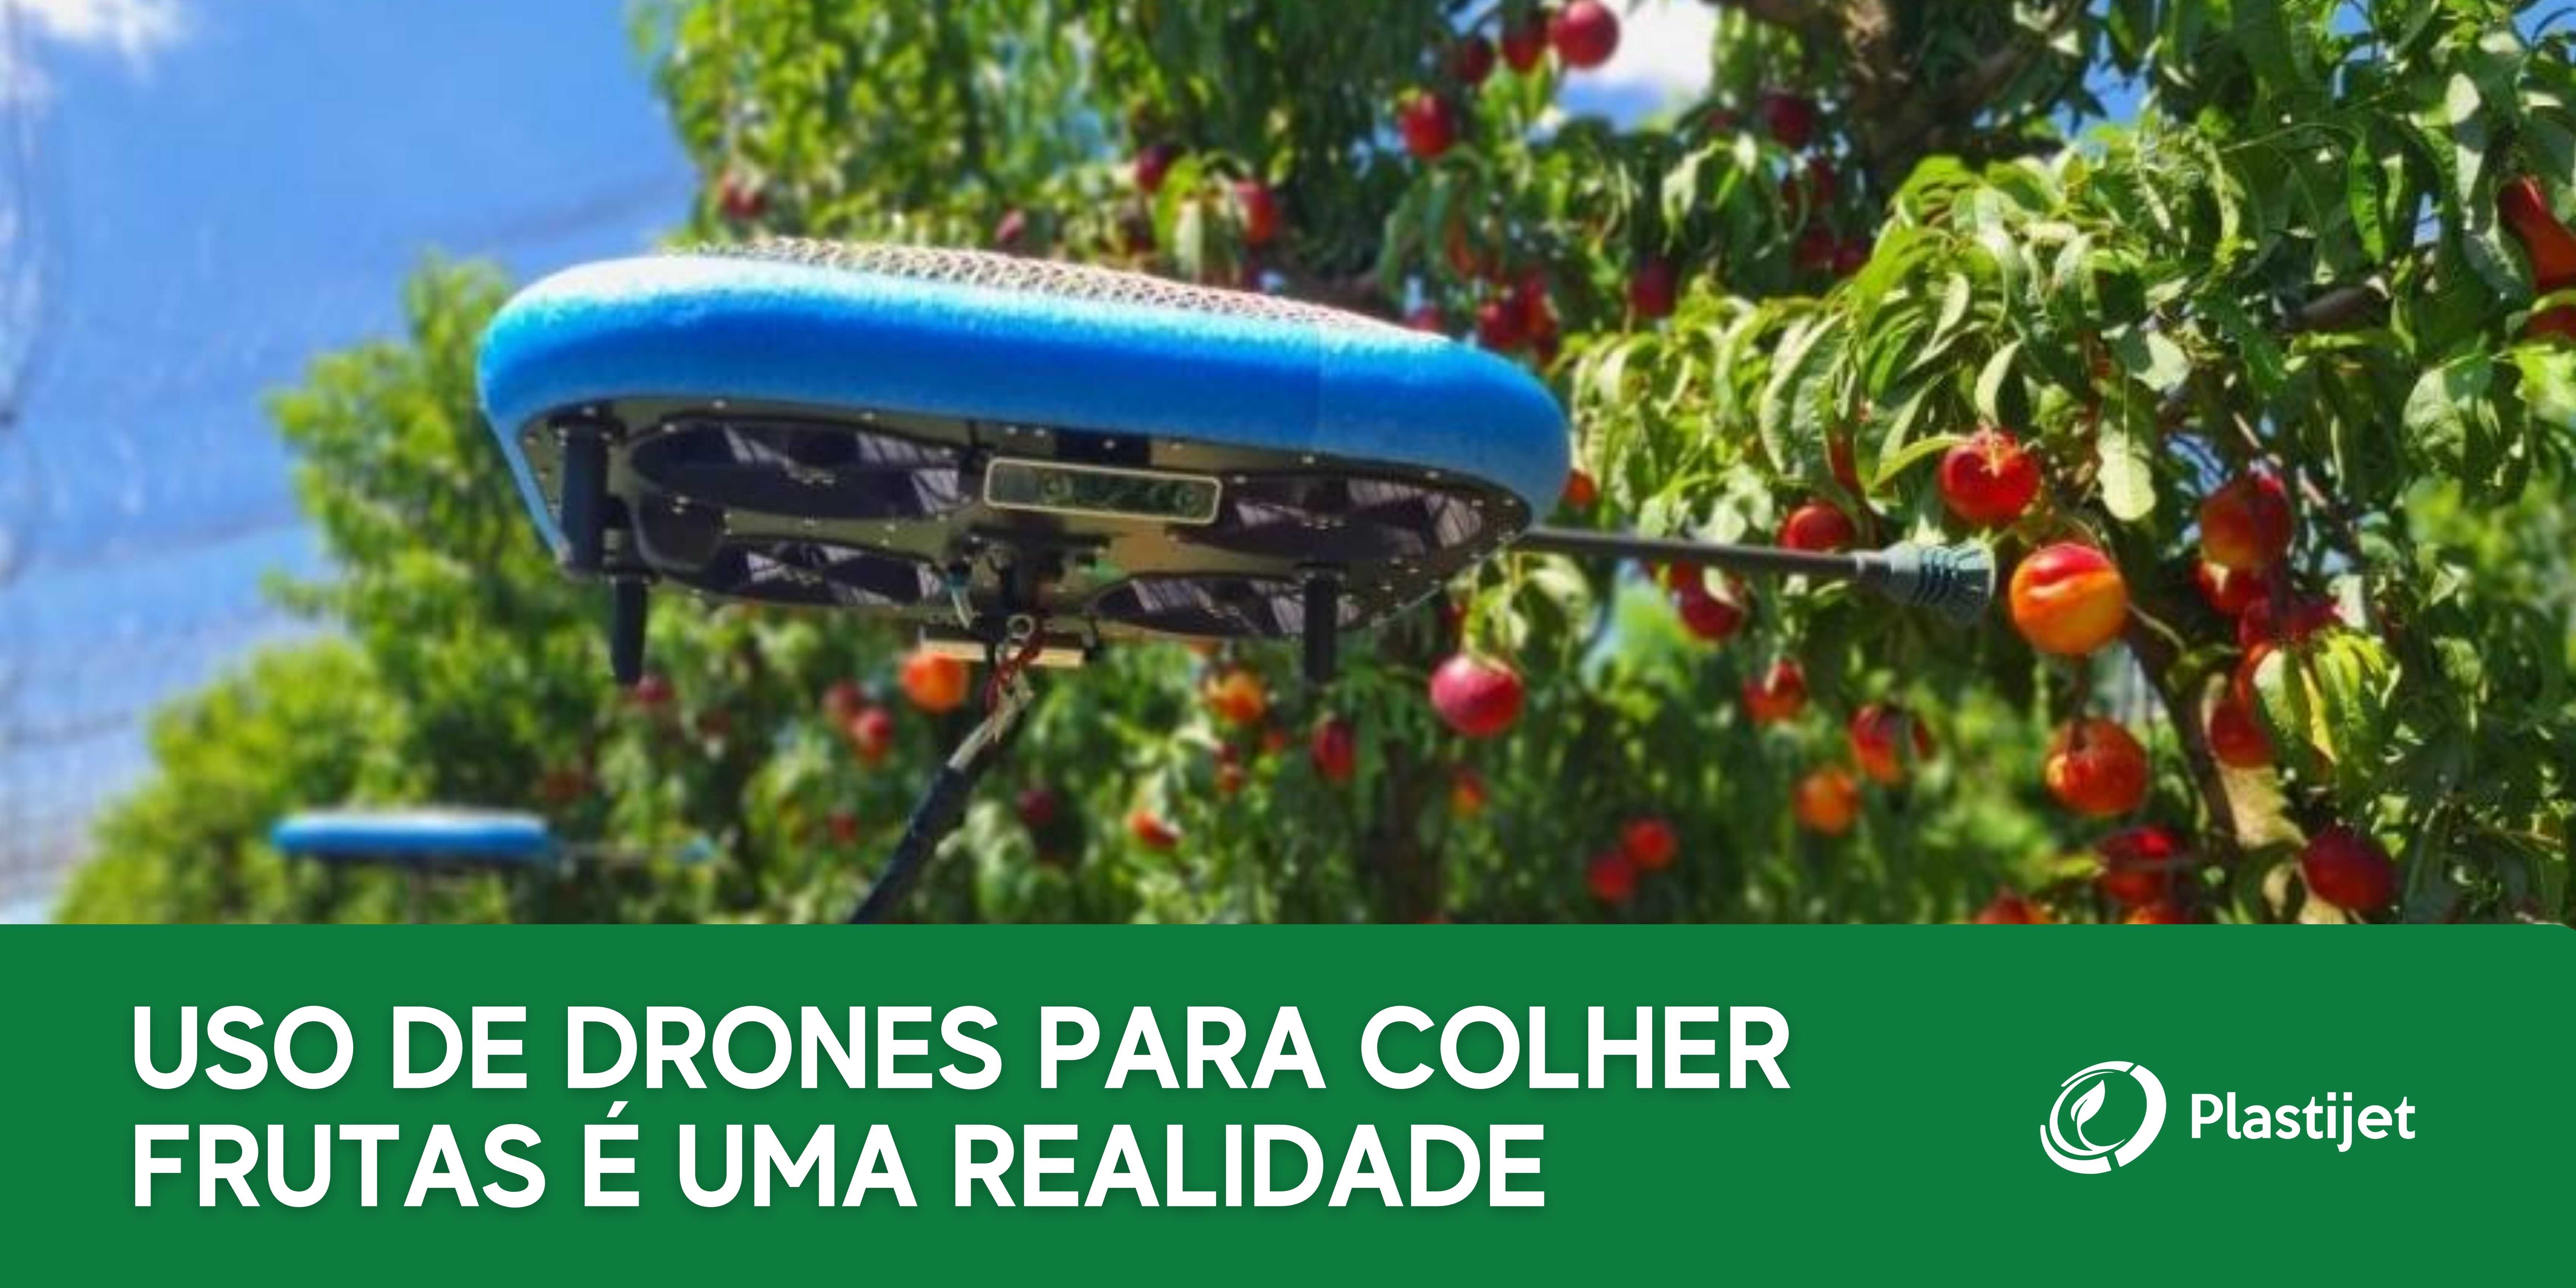 USO DE DRONES PARA COLHER FRUTAS É UMA REALIDADE